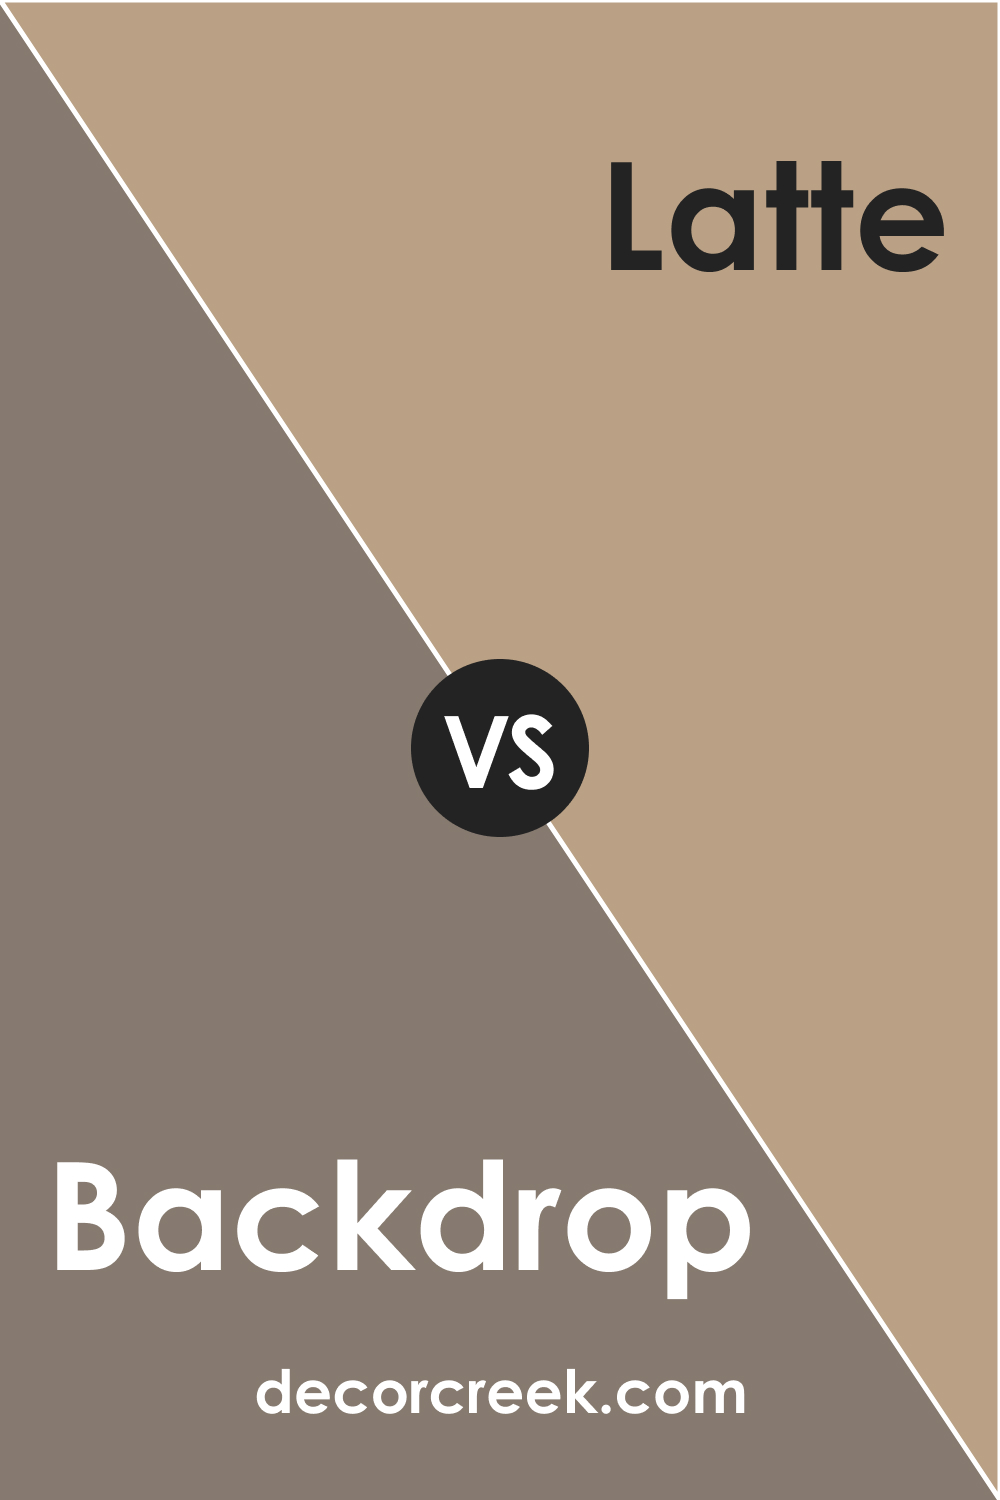 SW 7025 Backdrop vs. SW 6108 Latte